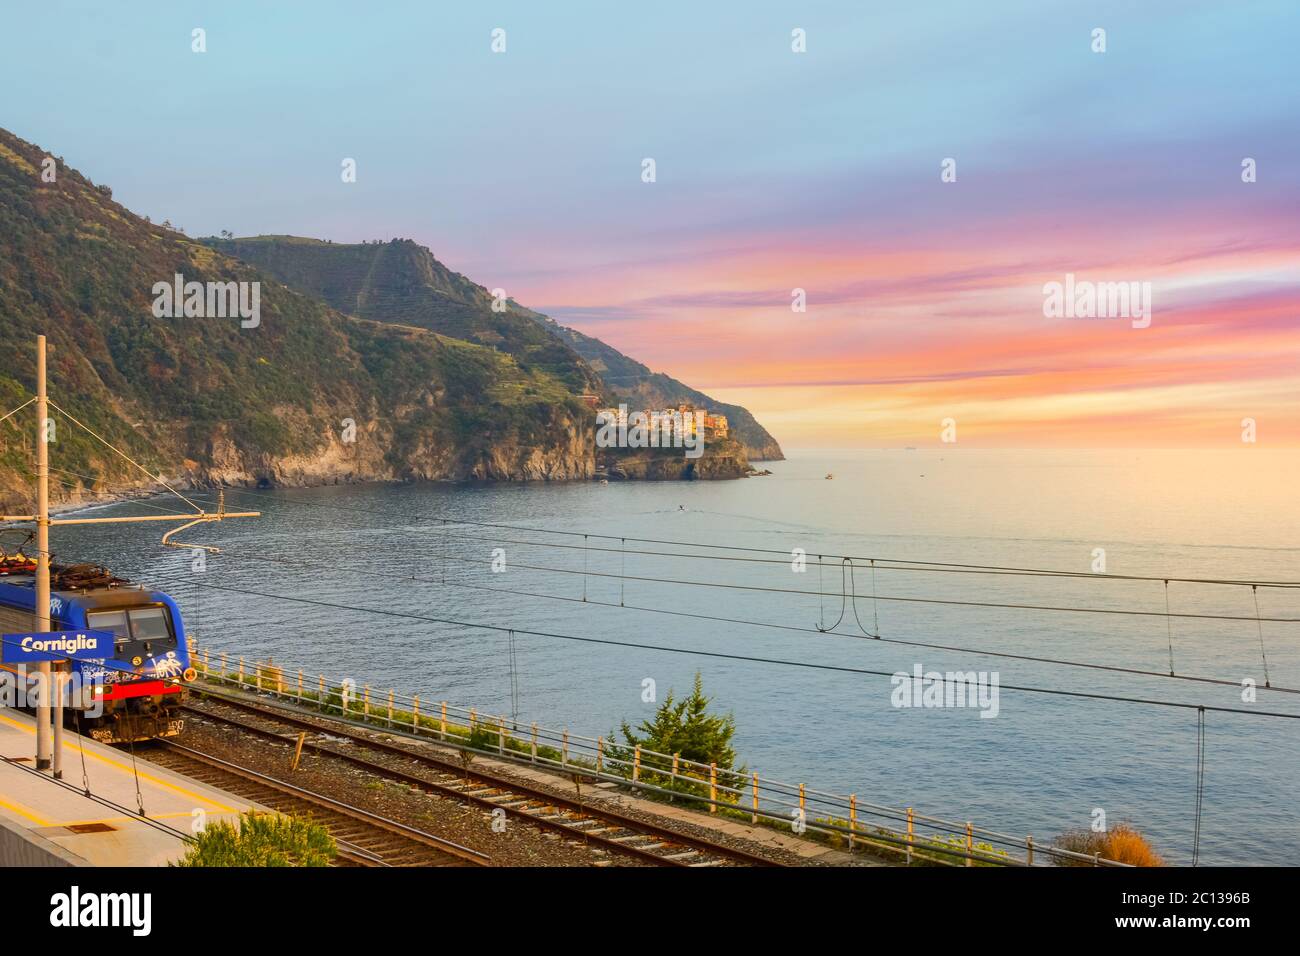 Sonnenuntergang auf der Cinque Terre, während der Zug in den Bahnhof Corniglia an der Küste Italiens fährt Stockfoto